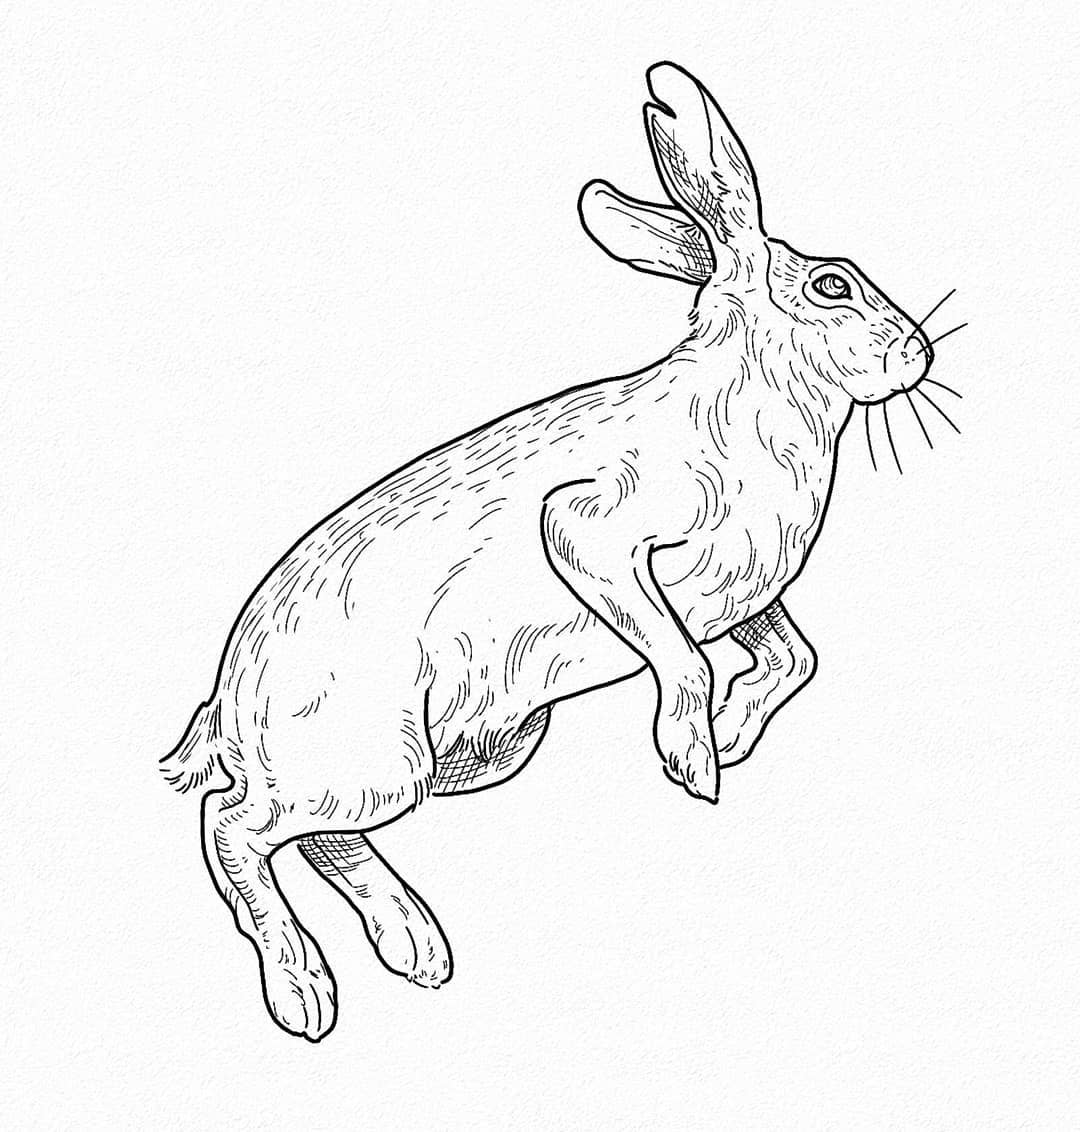 Good ol hare
-
#etchingtattoo #harettattoo #rabbittattoo #rabbit #tattooköln #ta